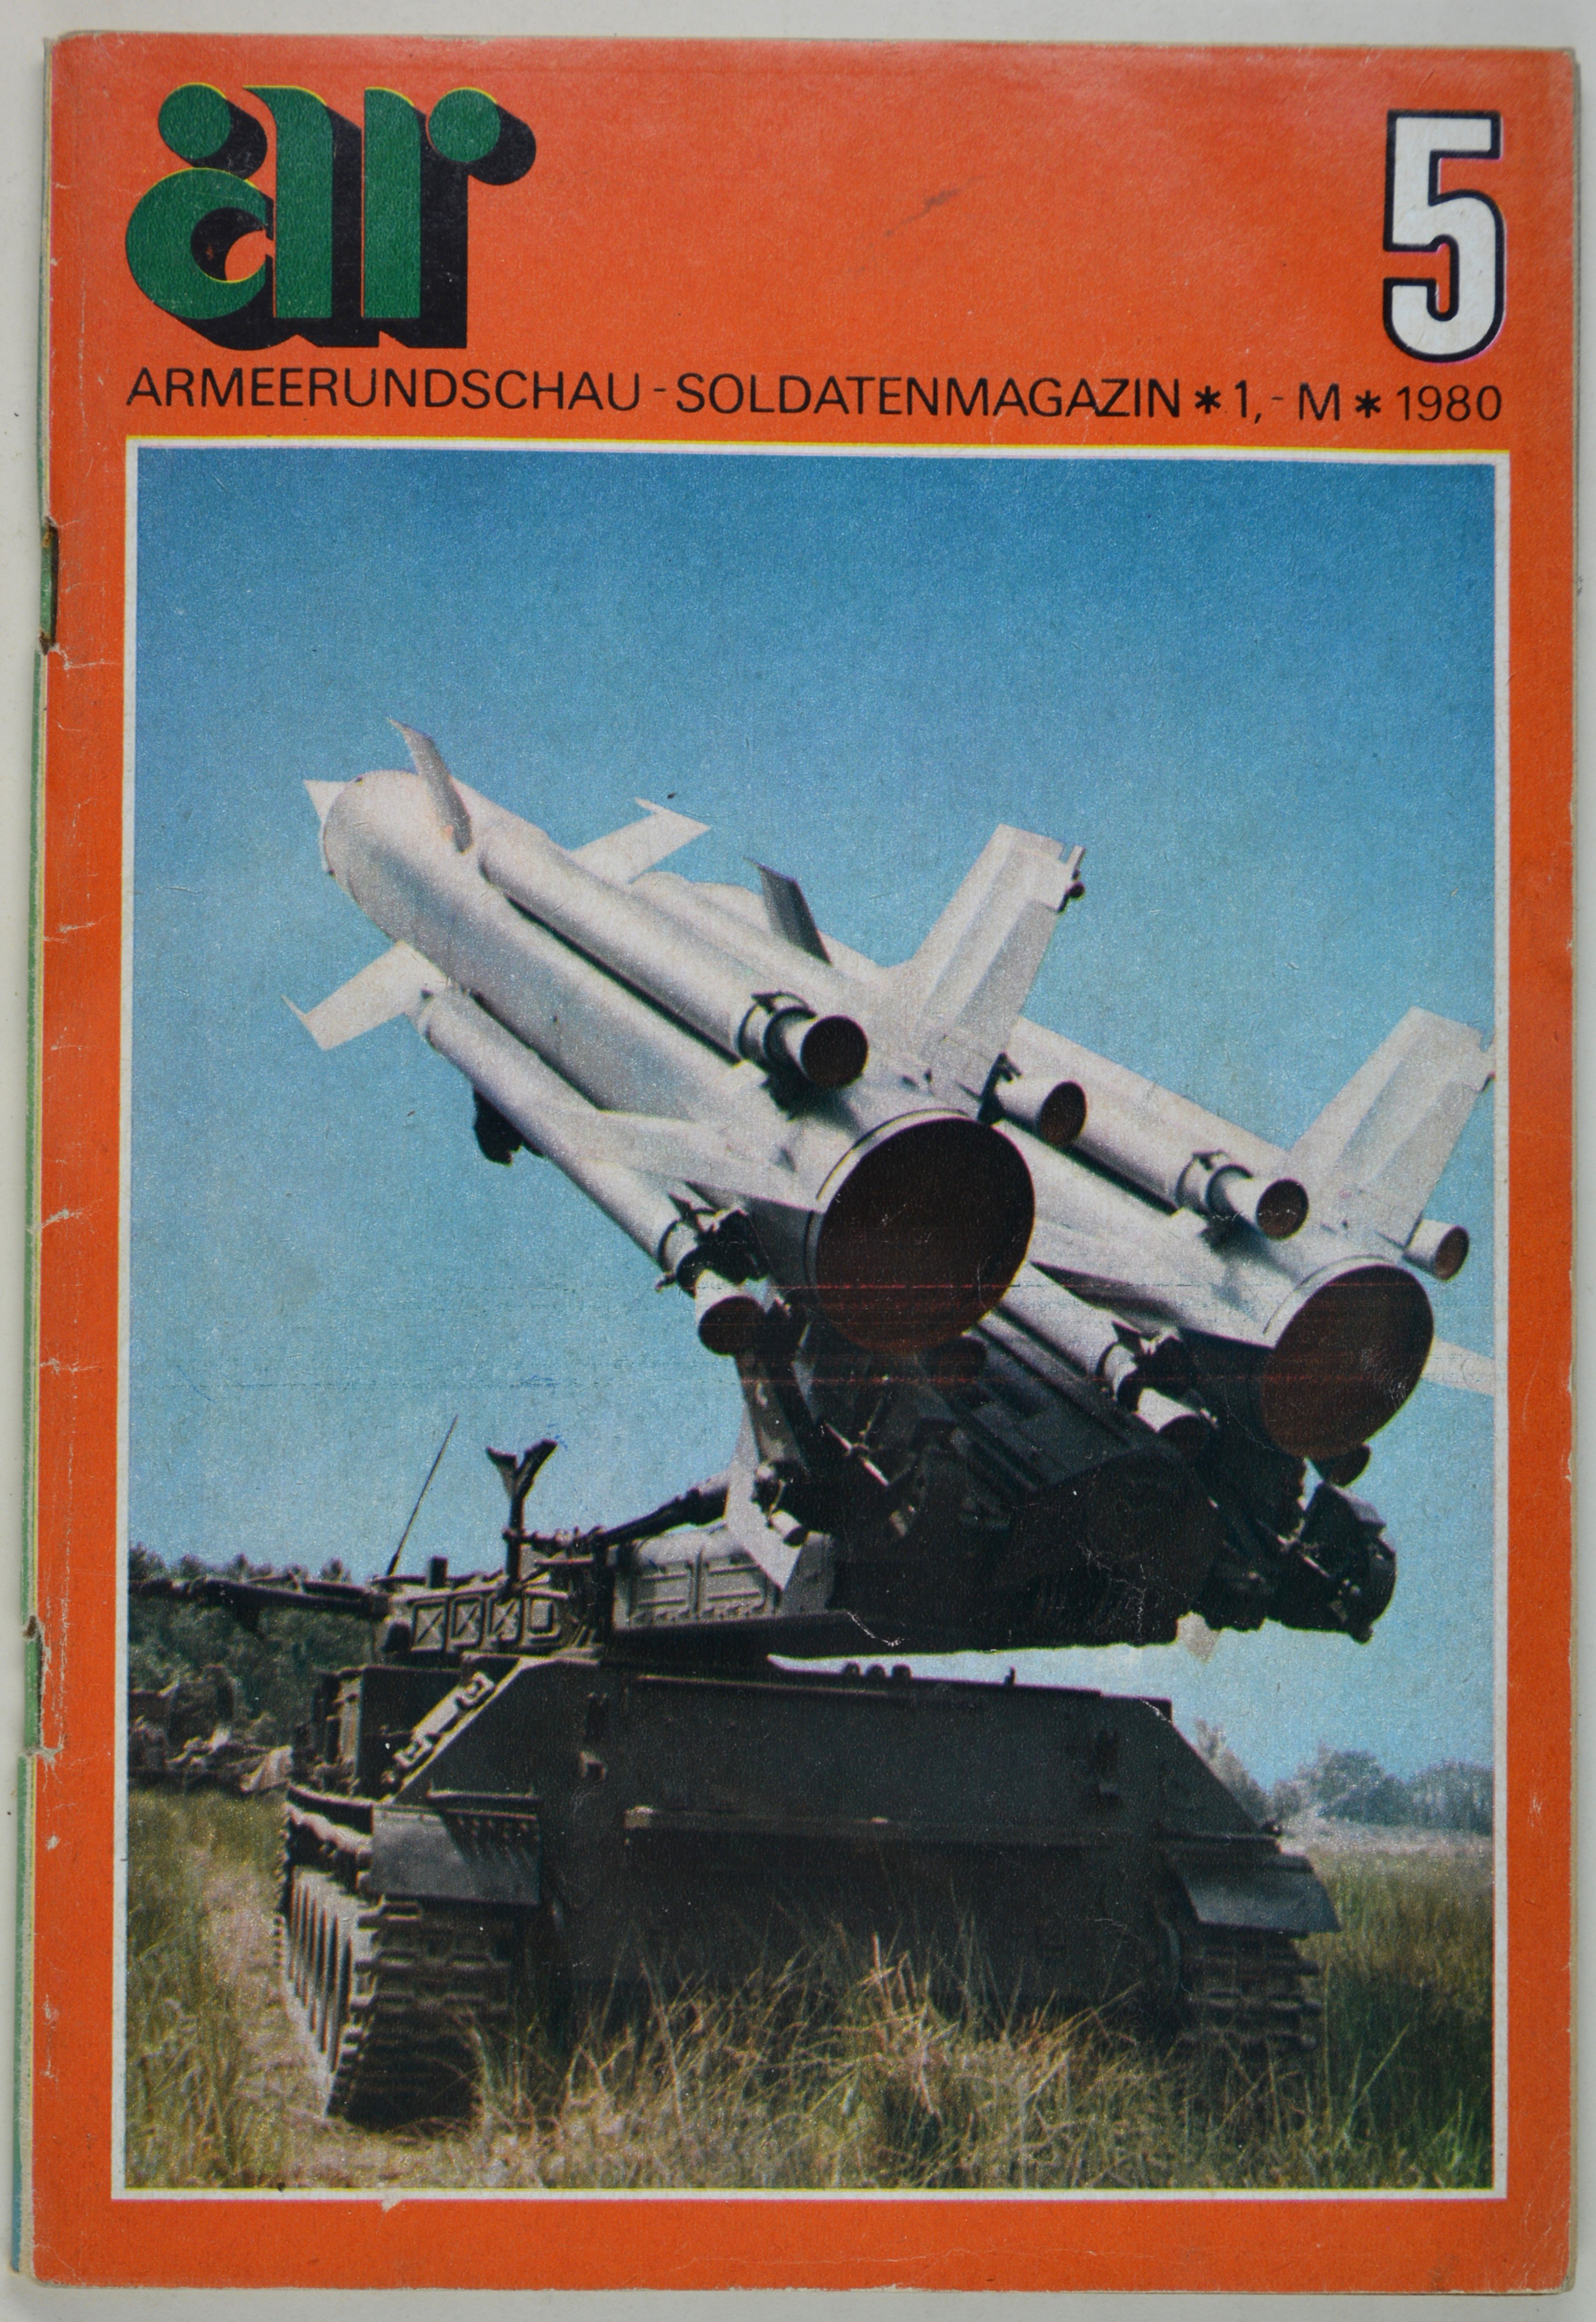 Armeerundschau - Soldatenmagazin (1980), Heft 5 (DDR Geschichtsmuseum im Dokumentationszentrum Perleberg CC BY-SA)